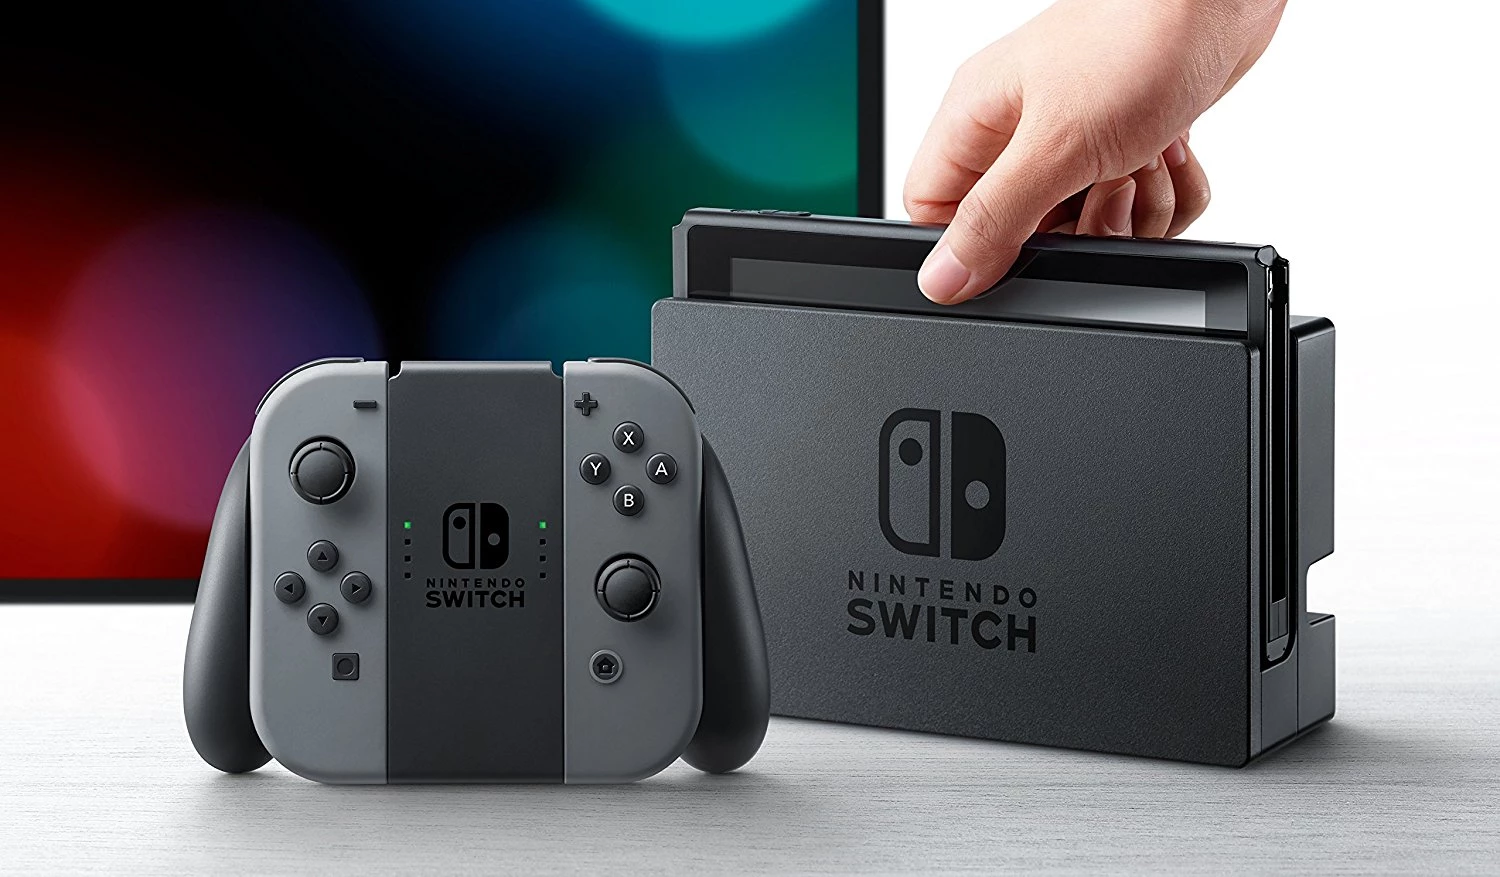 Nintendo Switch (2019 upgrade) - Grey (LEVERING 1) voor de Nintendo Switch kopen op nedgame.nl